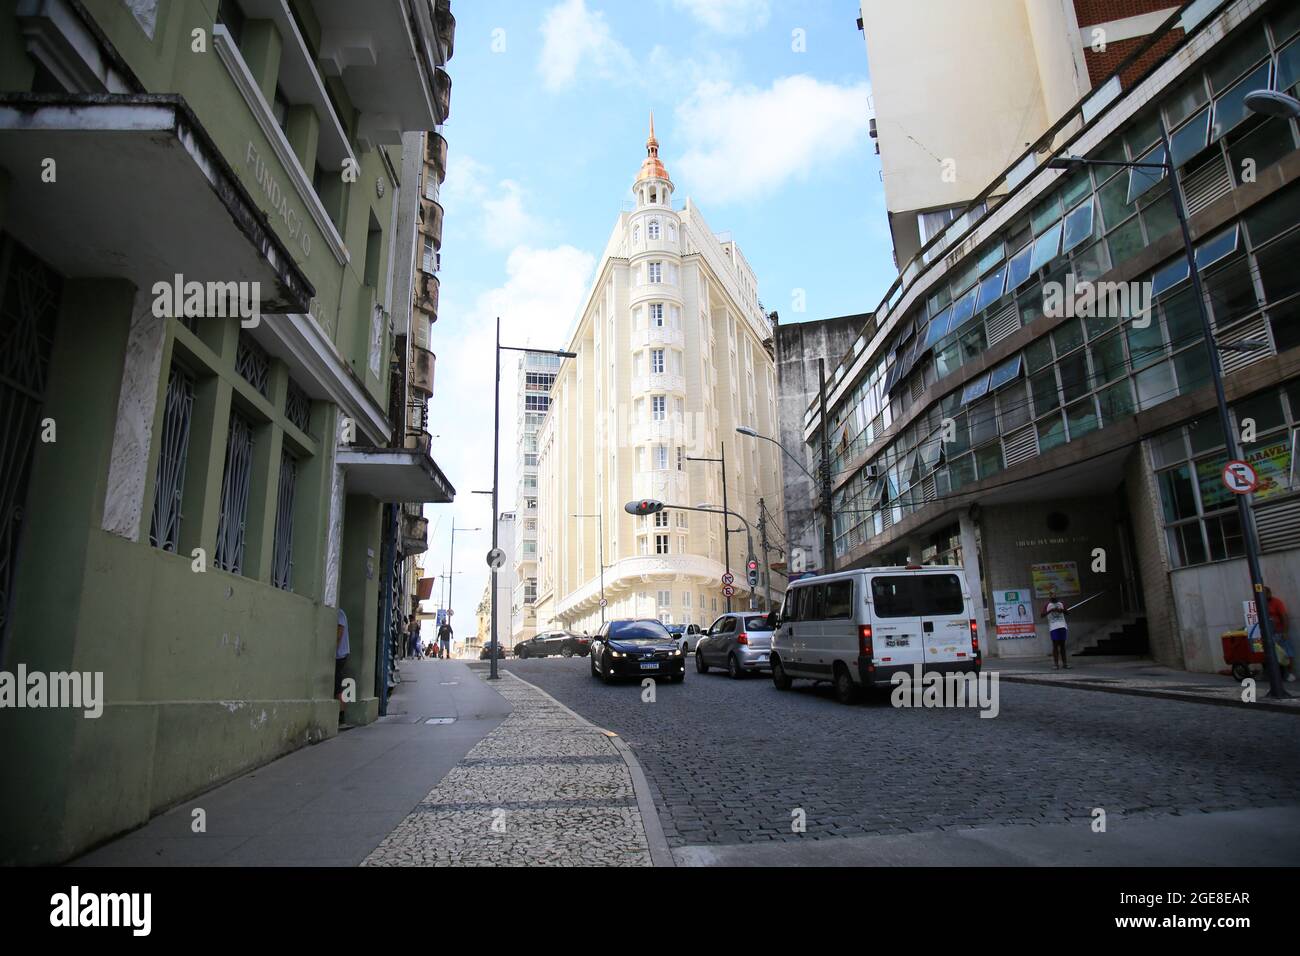 salvador, bahia, brasilien - 17. august 2021: Blick auf alte Gebäude auf der Rua Chile, dem historischen Zentrum der Stadt Salvador. Stockfoto